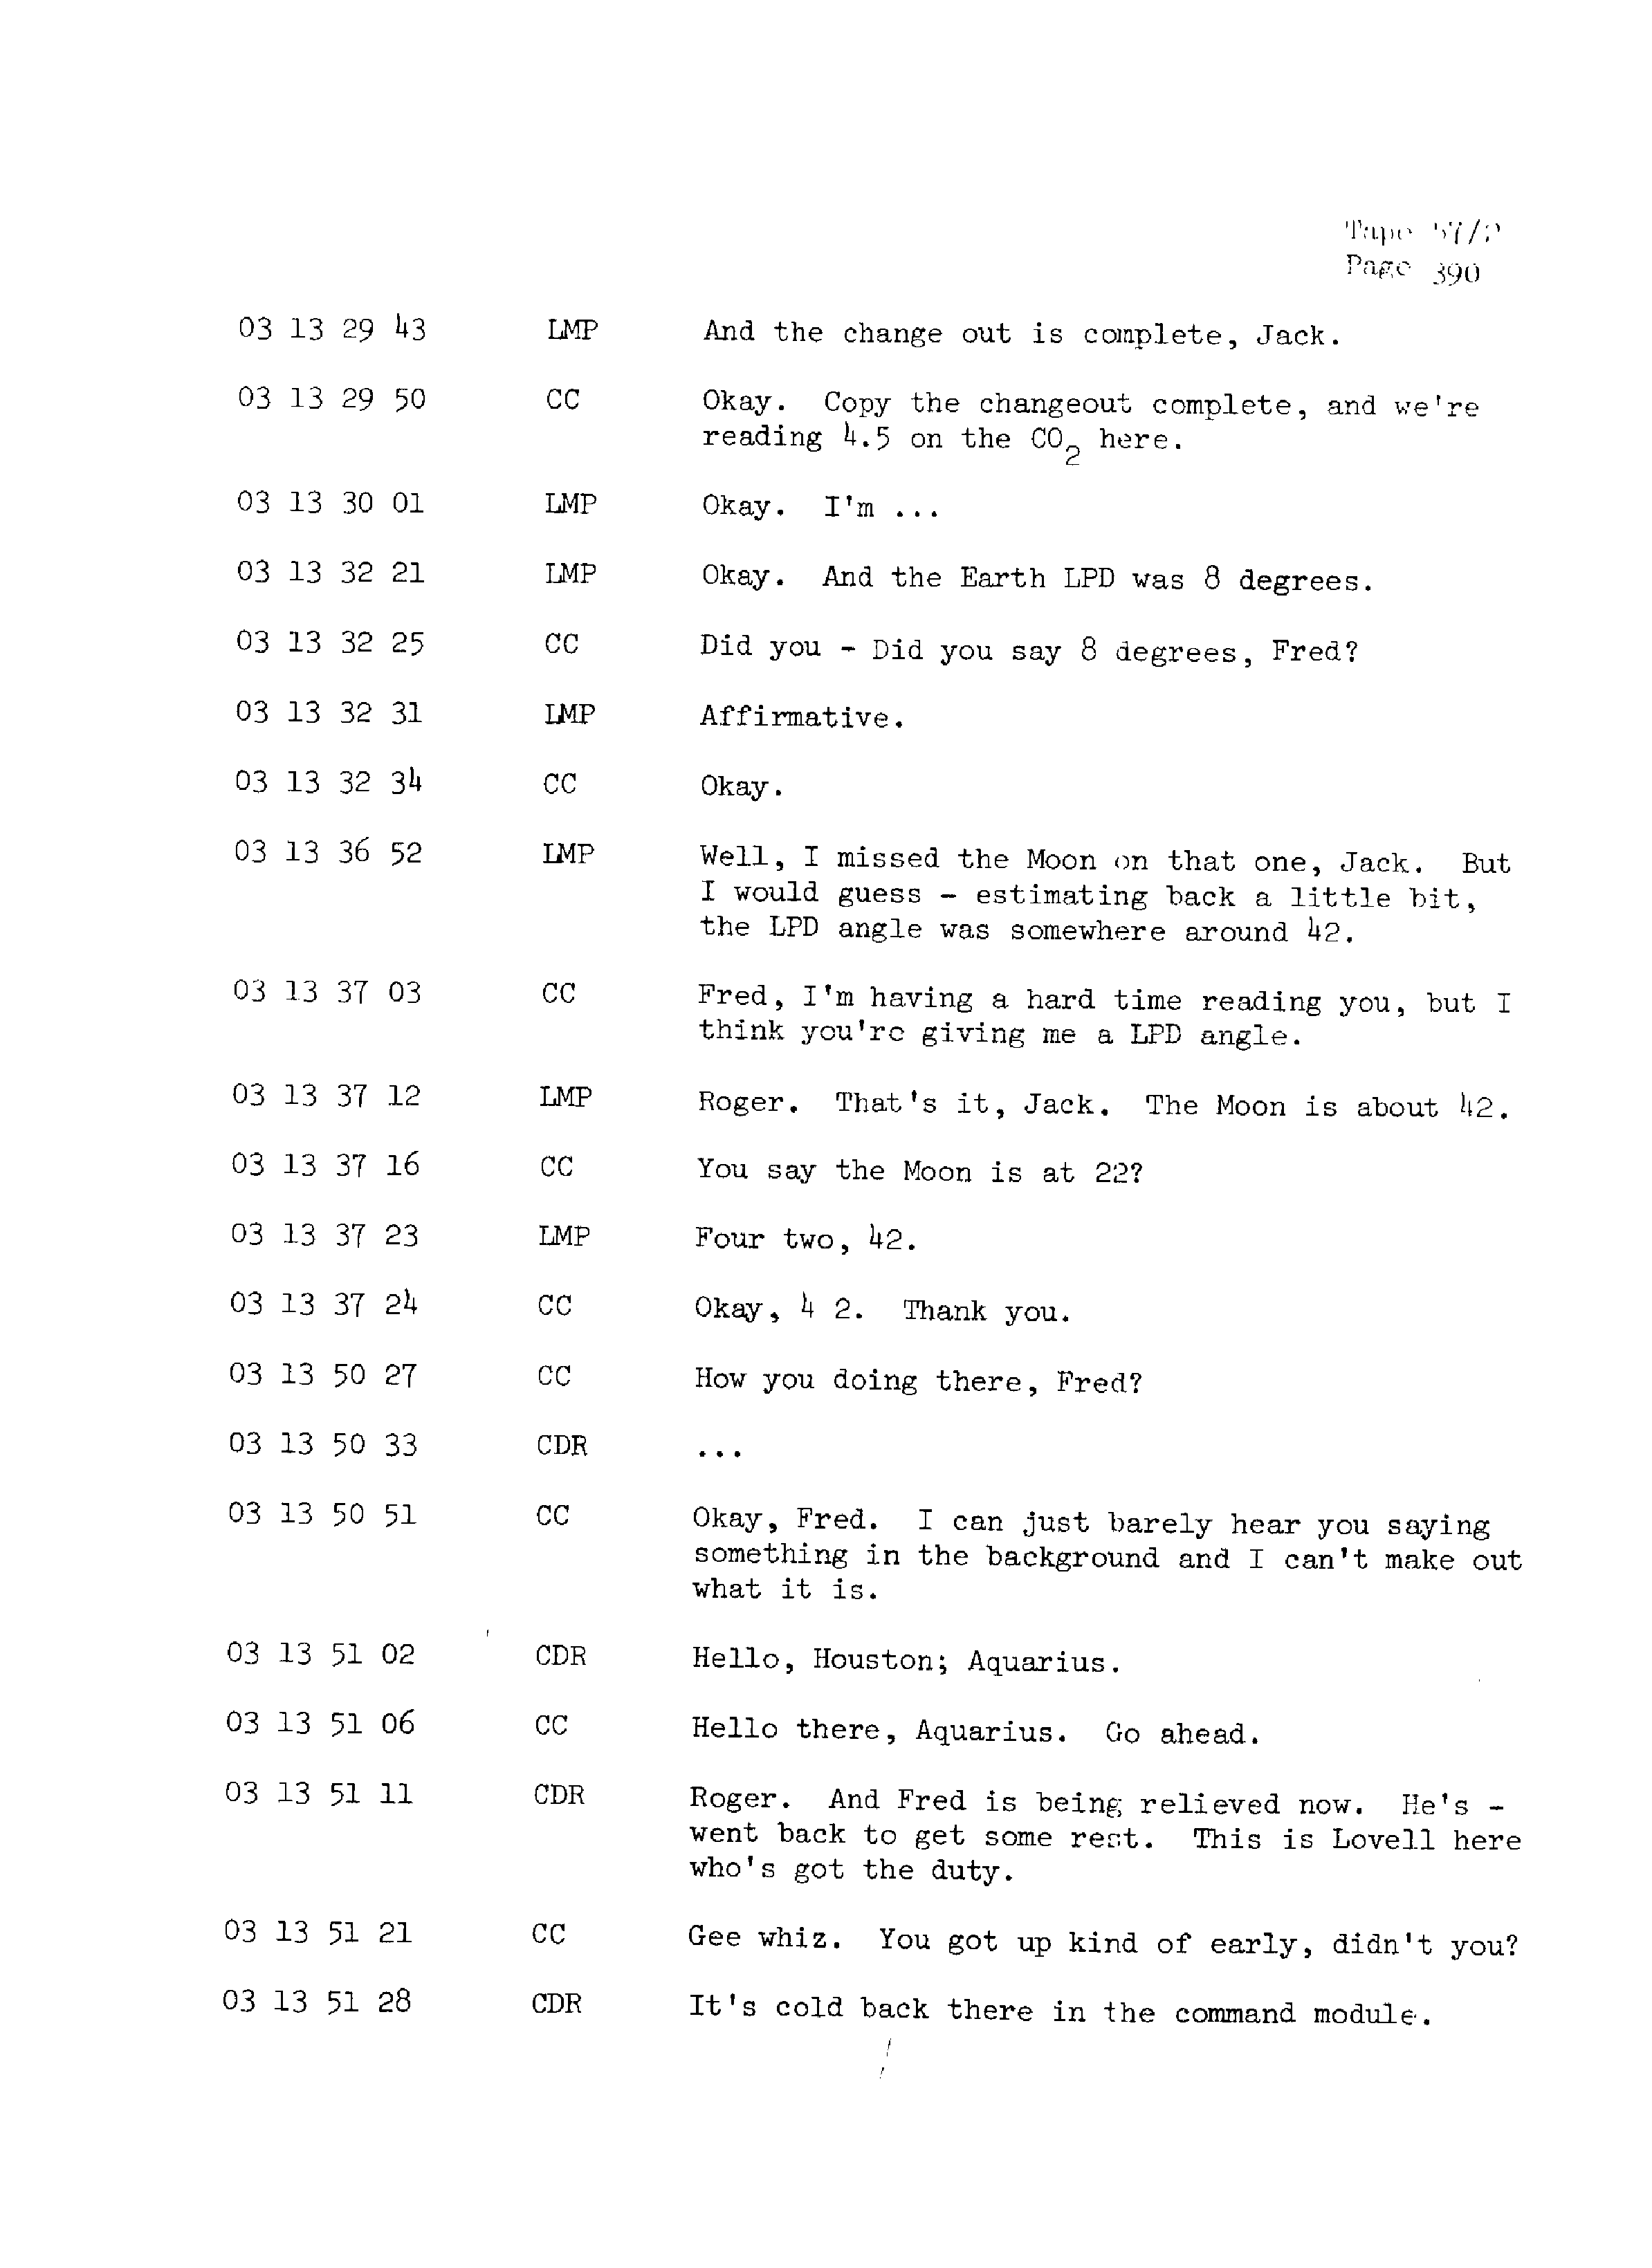 Page 397 of Apollo 13’s original transcript